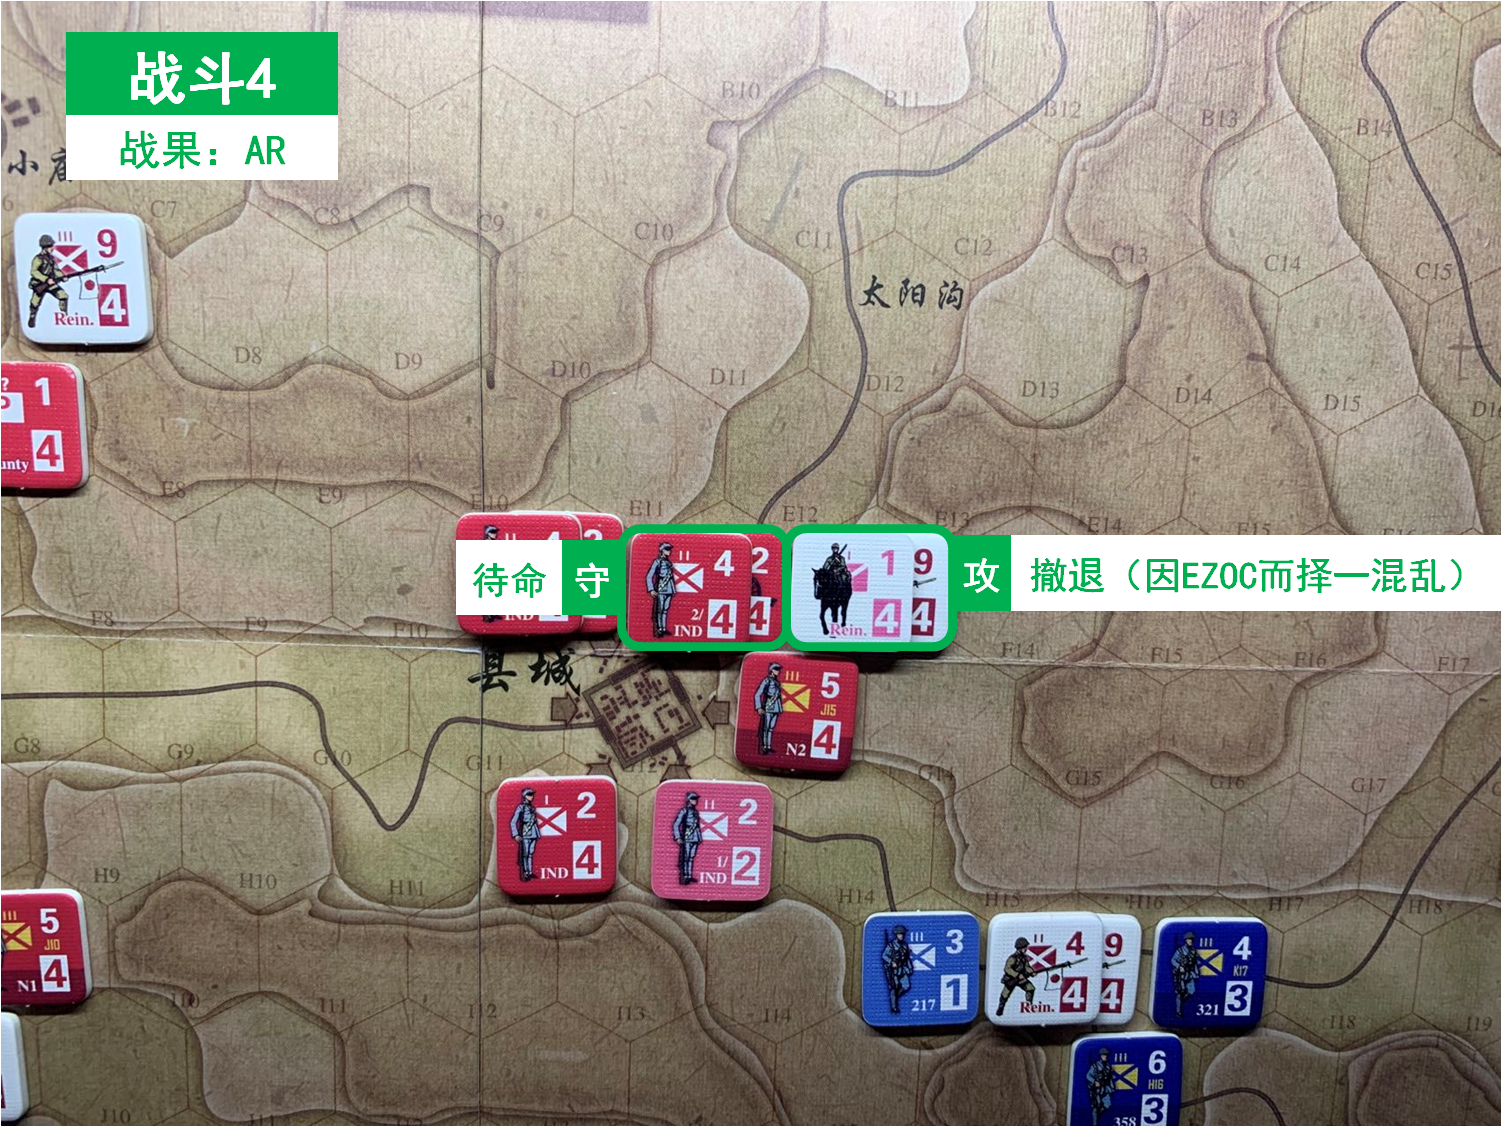 第四回合 日方戰鬥階段 戰鬥4 戰鬥結果